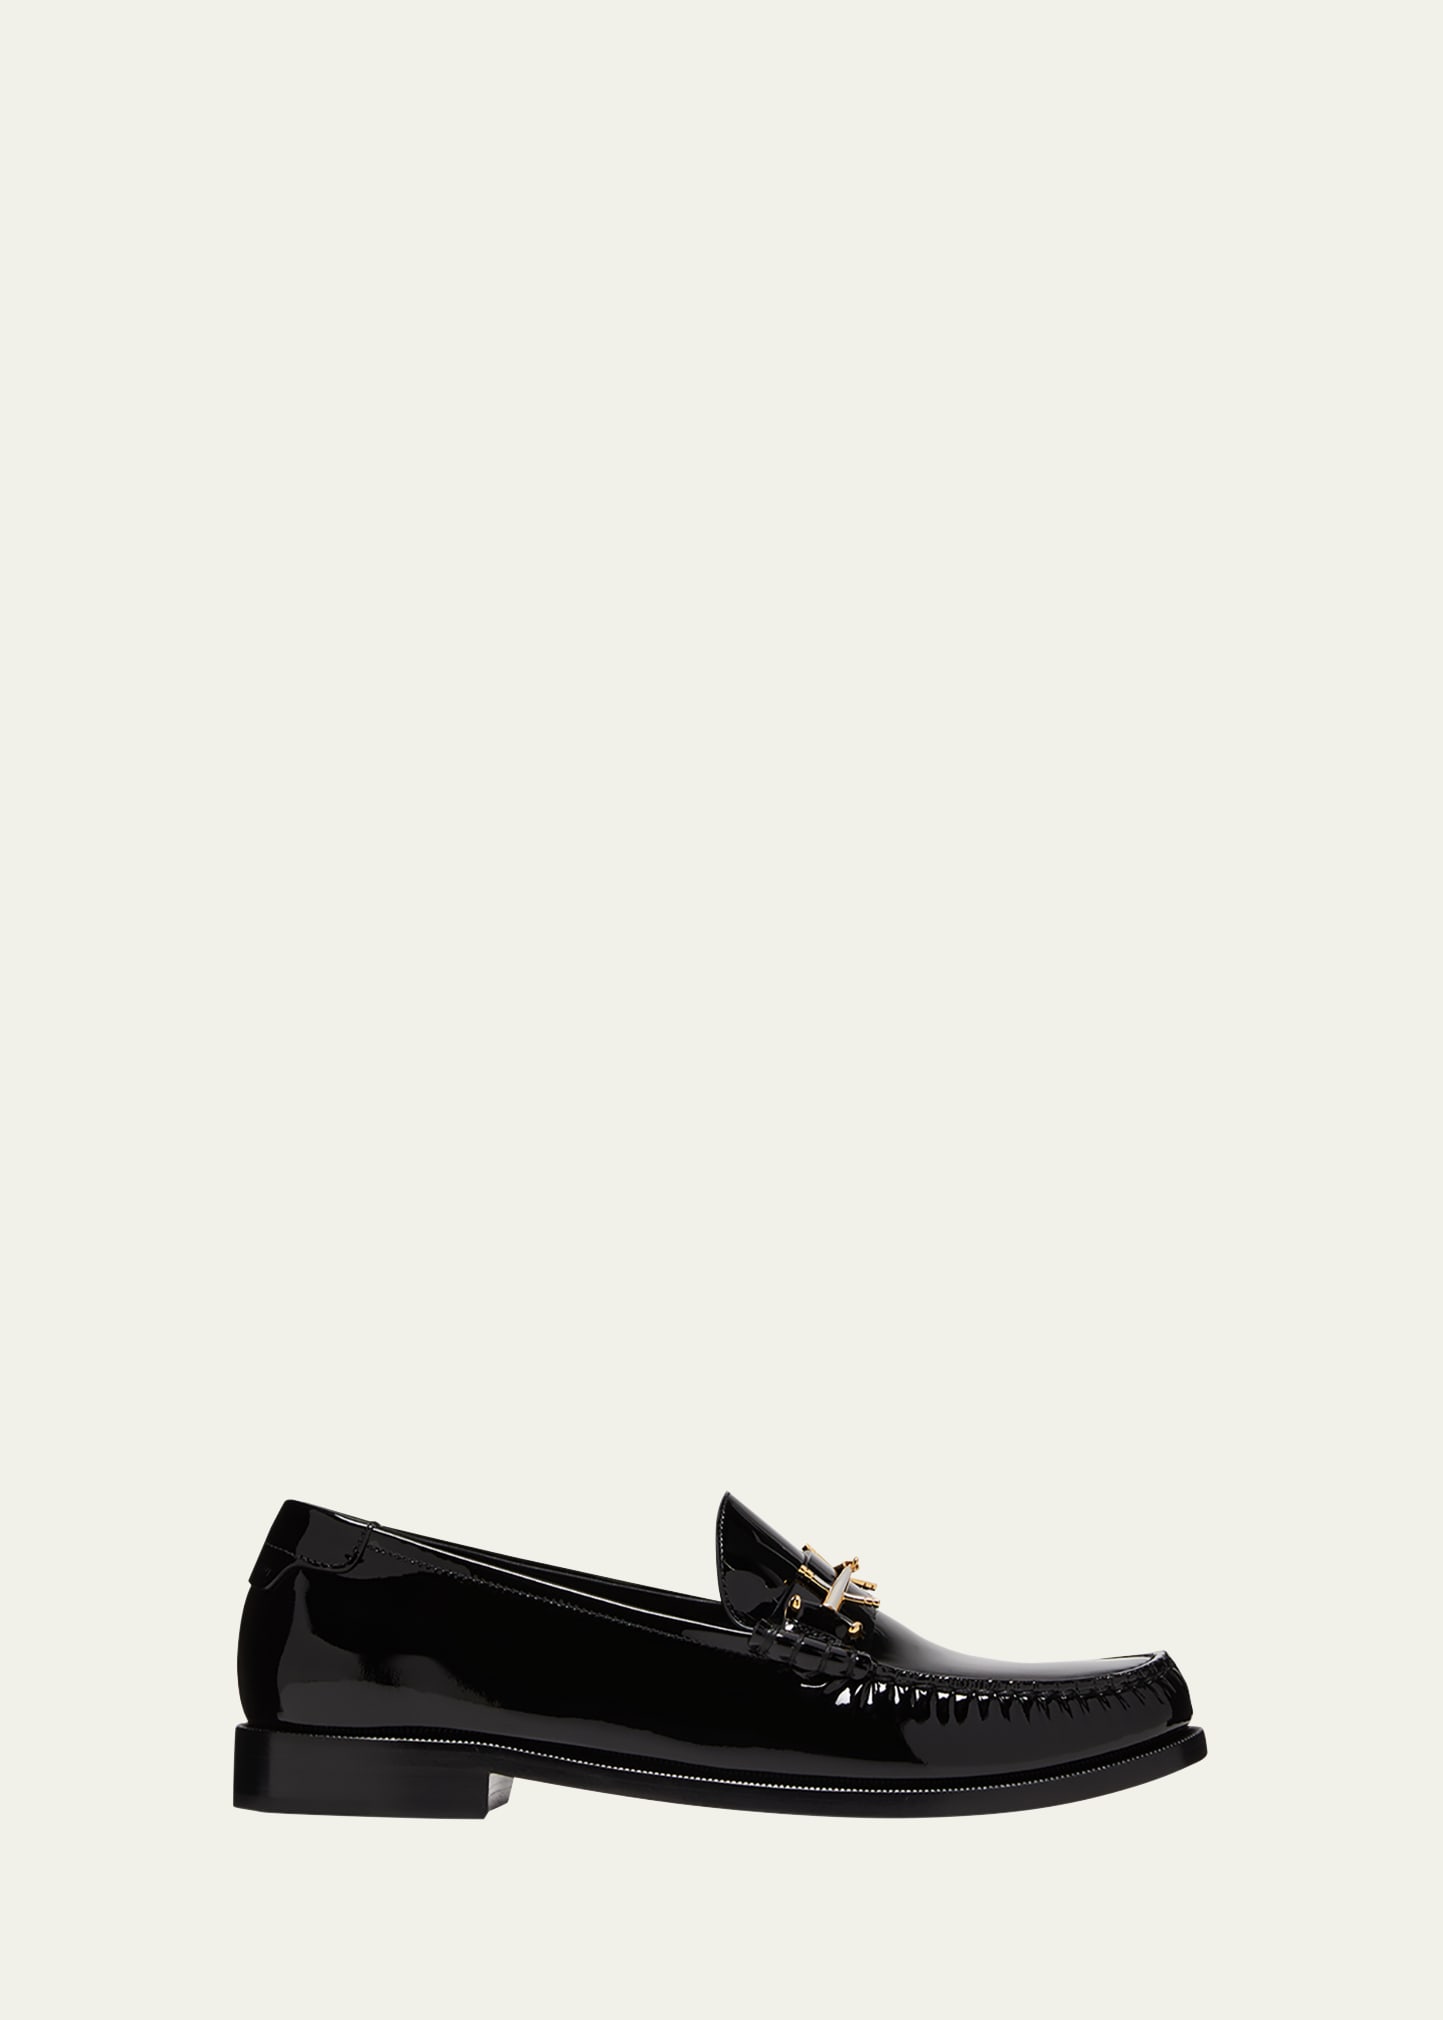 skridtlængde Forføre I tide Saint Laurent Men's Patent Leather Loafers - Bergdorf Goodman